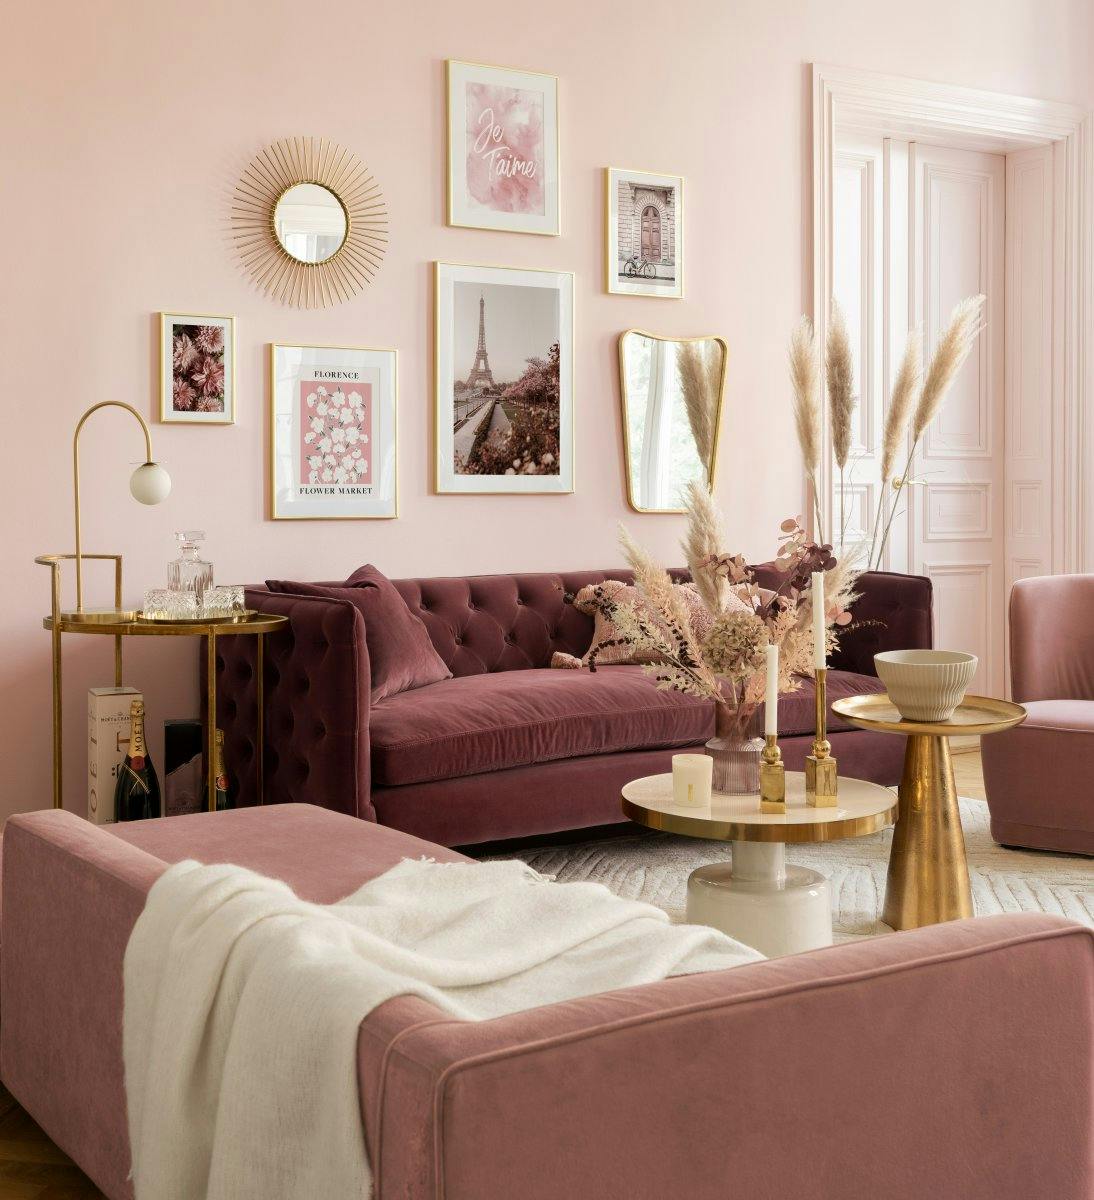 جدار معرض باريس الرومانسي باللون الوردي مع إطارات ذهبية لغرفة المعيشة